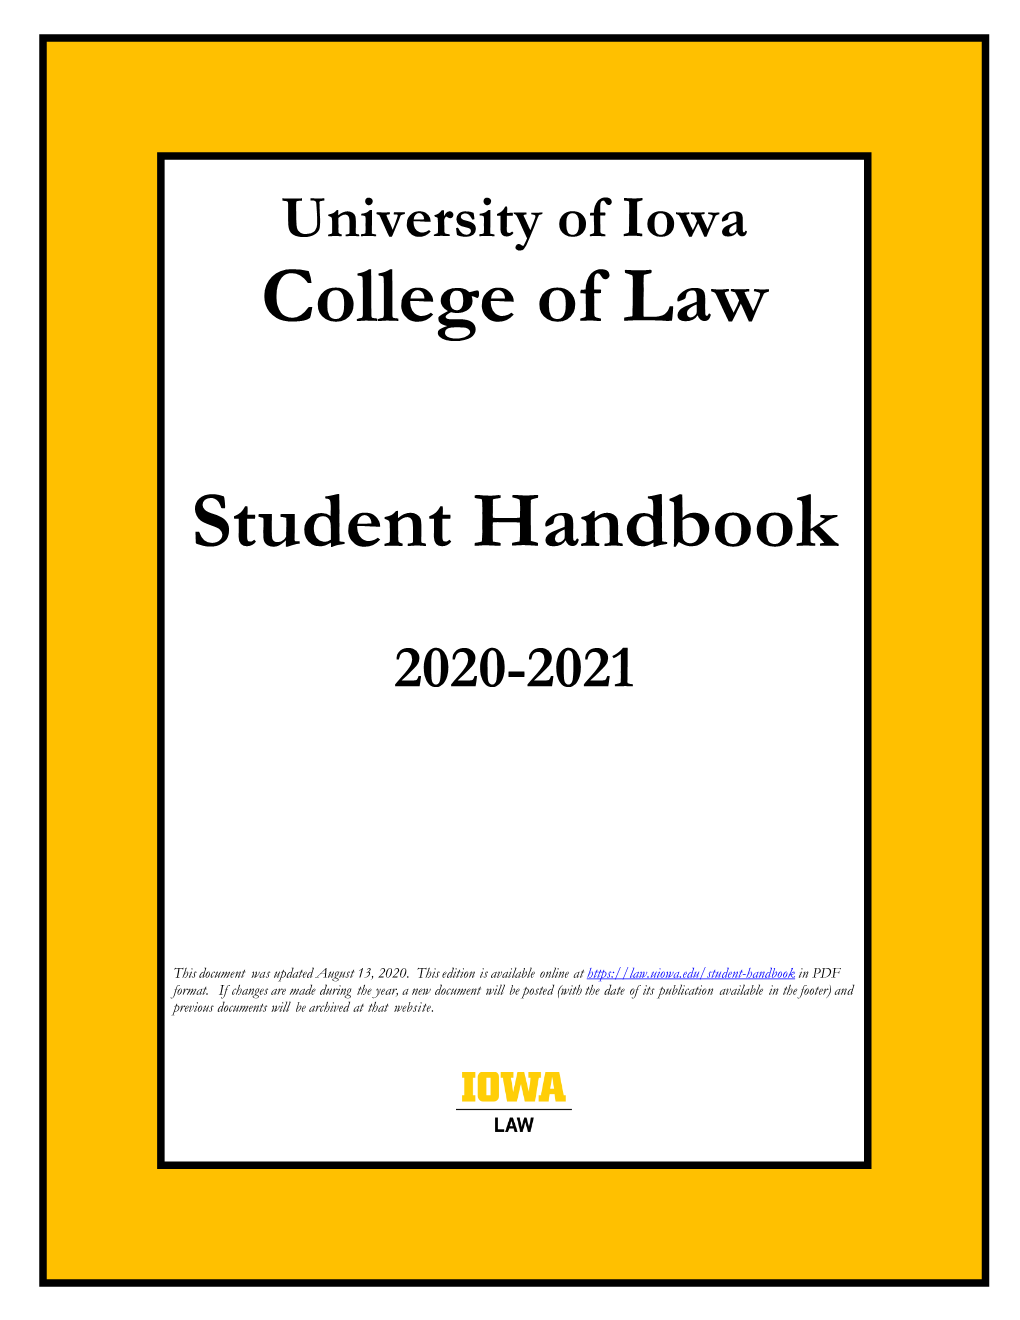 Student Handbook (2020-2021)